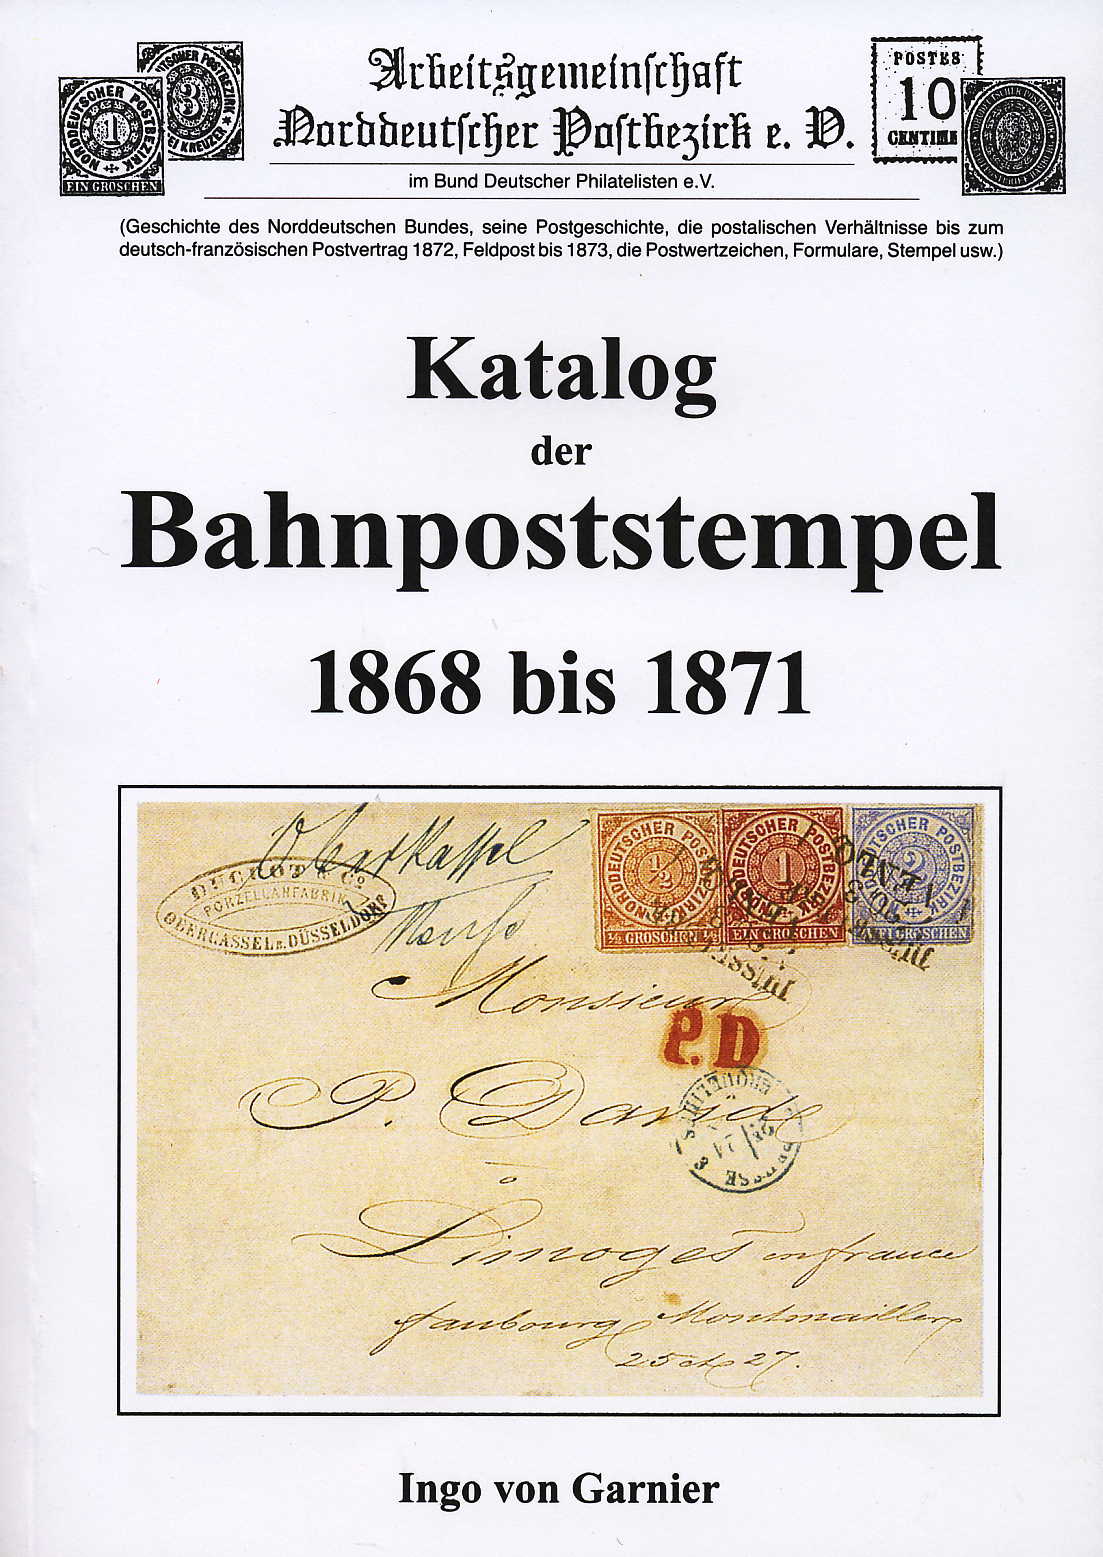 Garnier Katalog der Bahnpoststempel 1868-1871 (NDP)